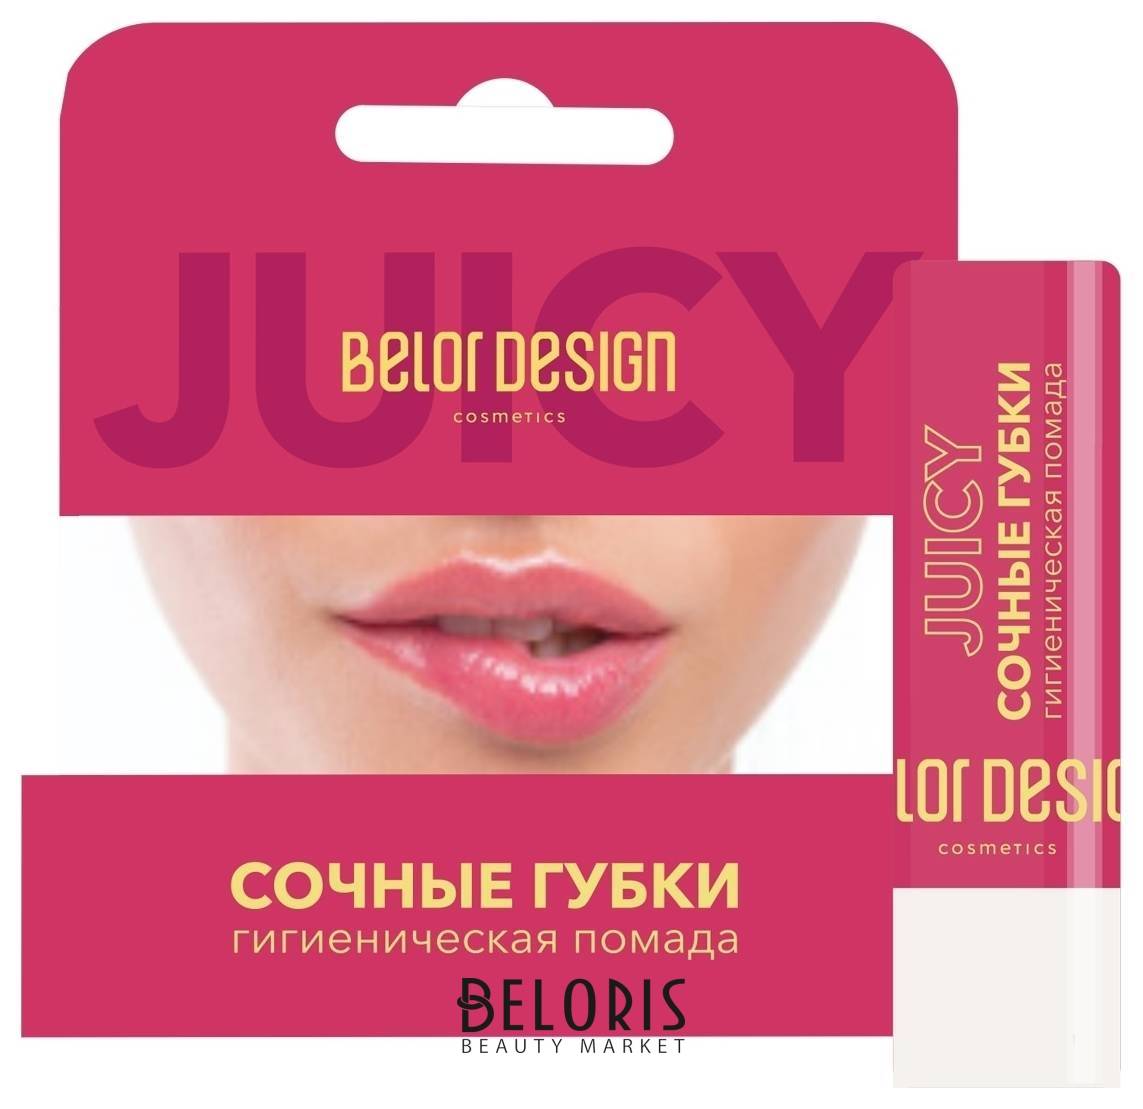 Сайты Магазинов Белорусской Косметики В Екатеринбурге